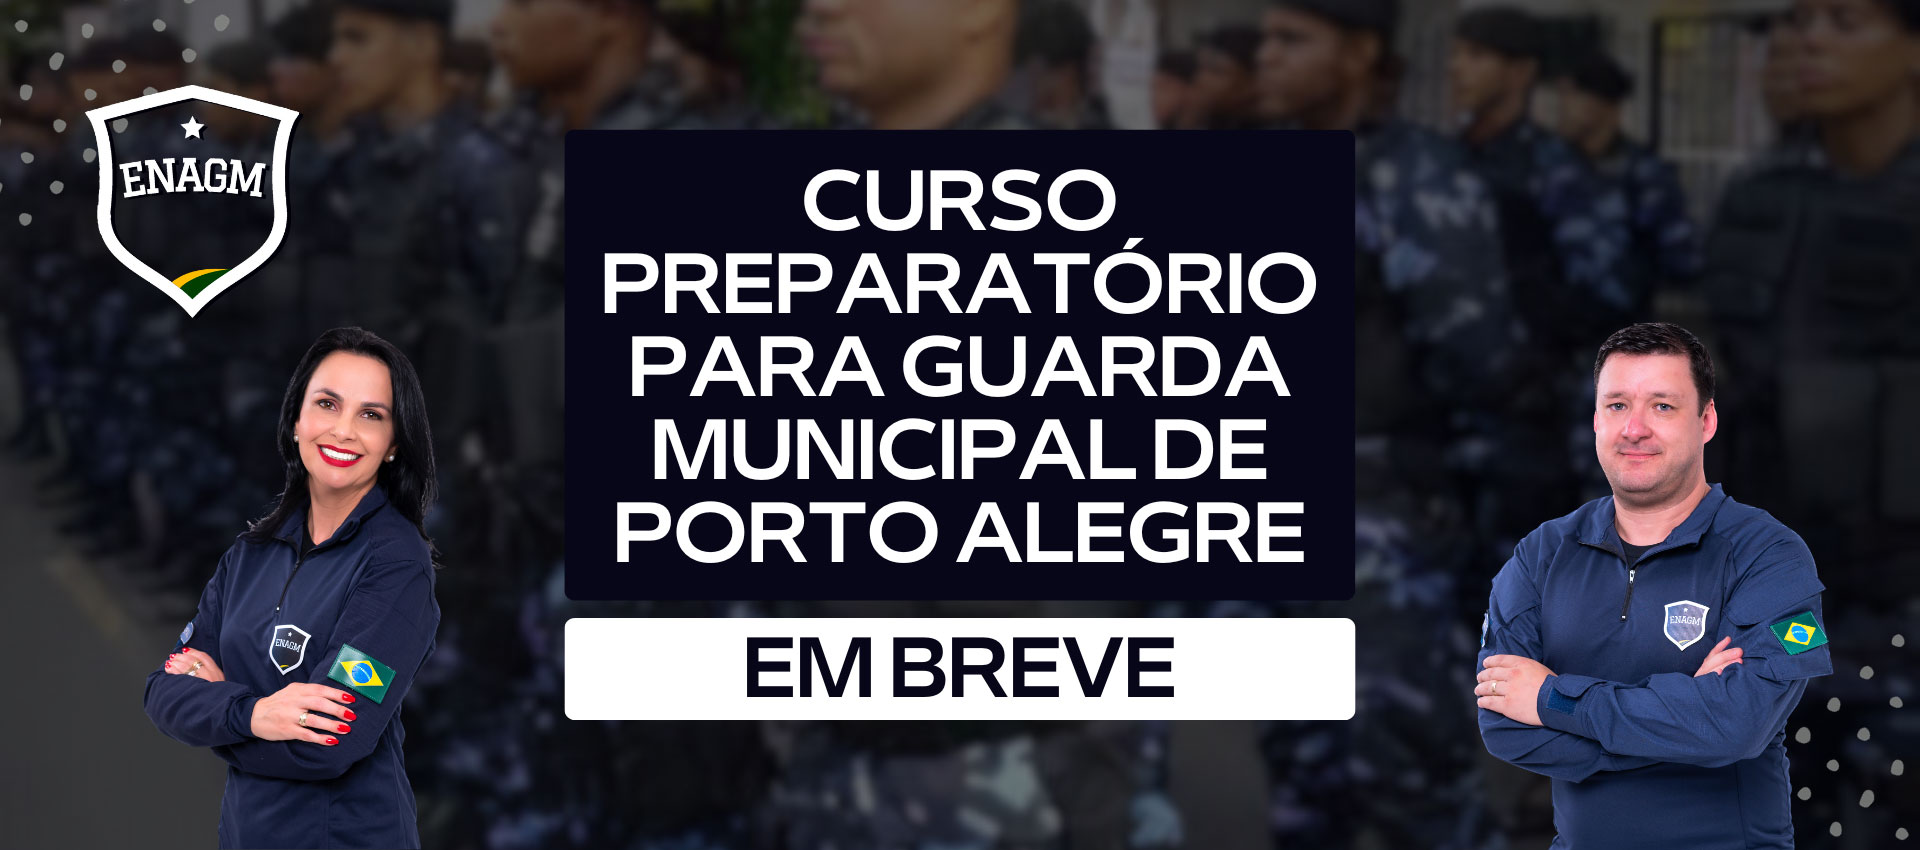 Curso Preparatório para Guarda Municipal de Porto Alegre